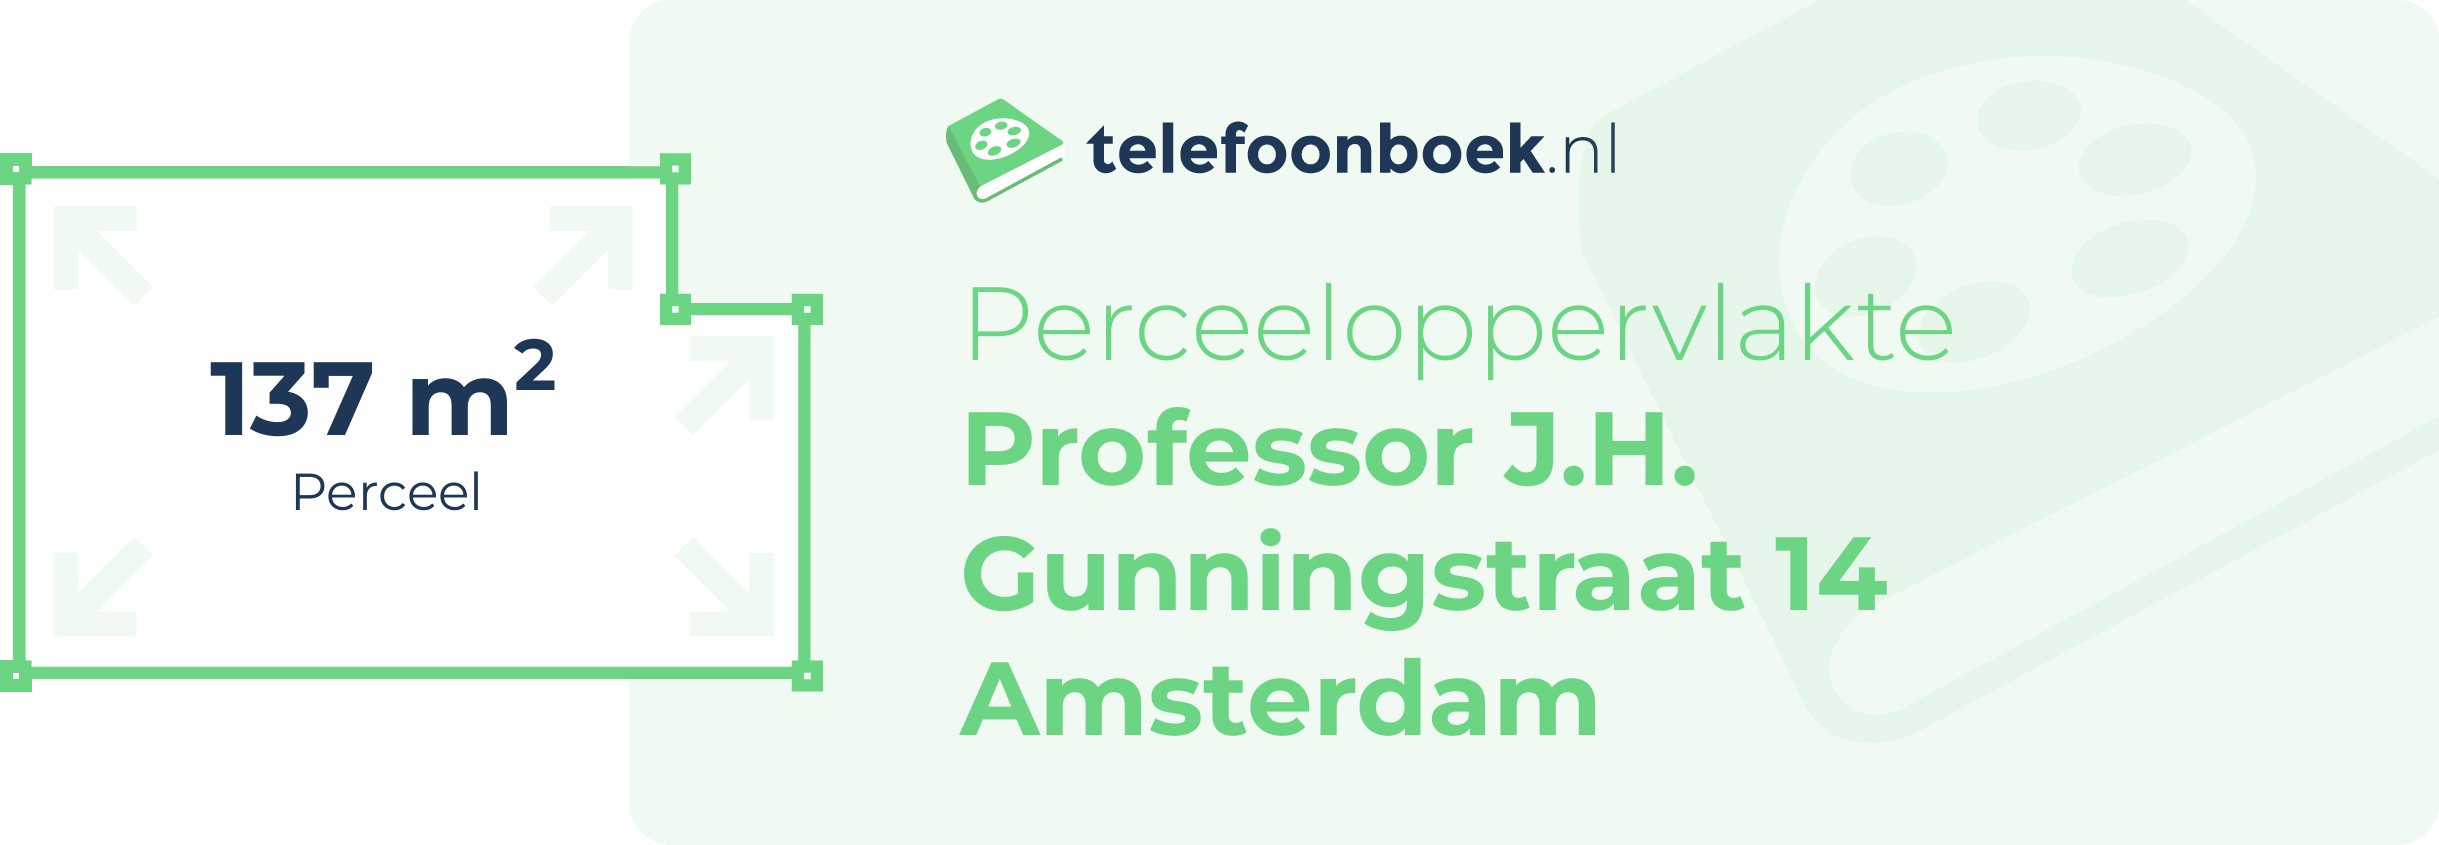 Perceeloppervlakte Professor J.H. Gunningstraat 14 Amsterdam